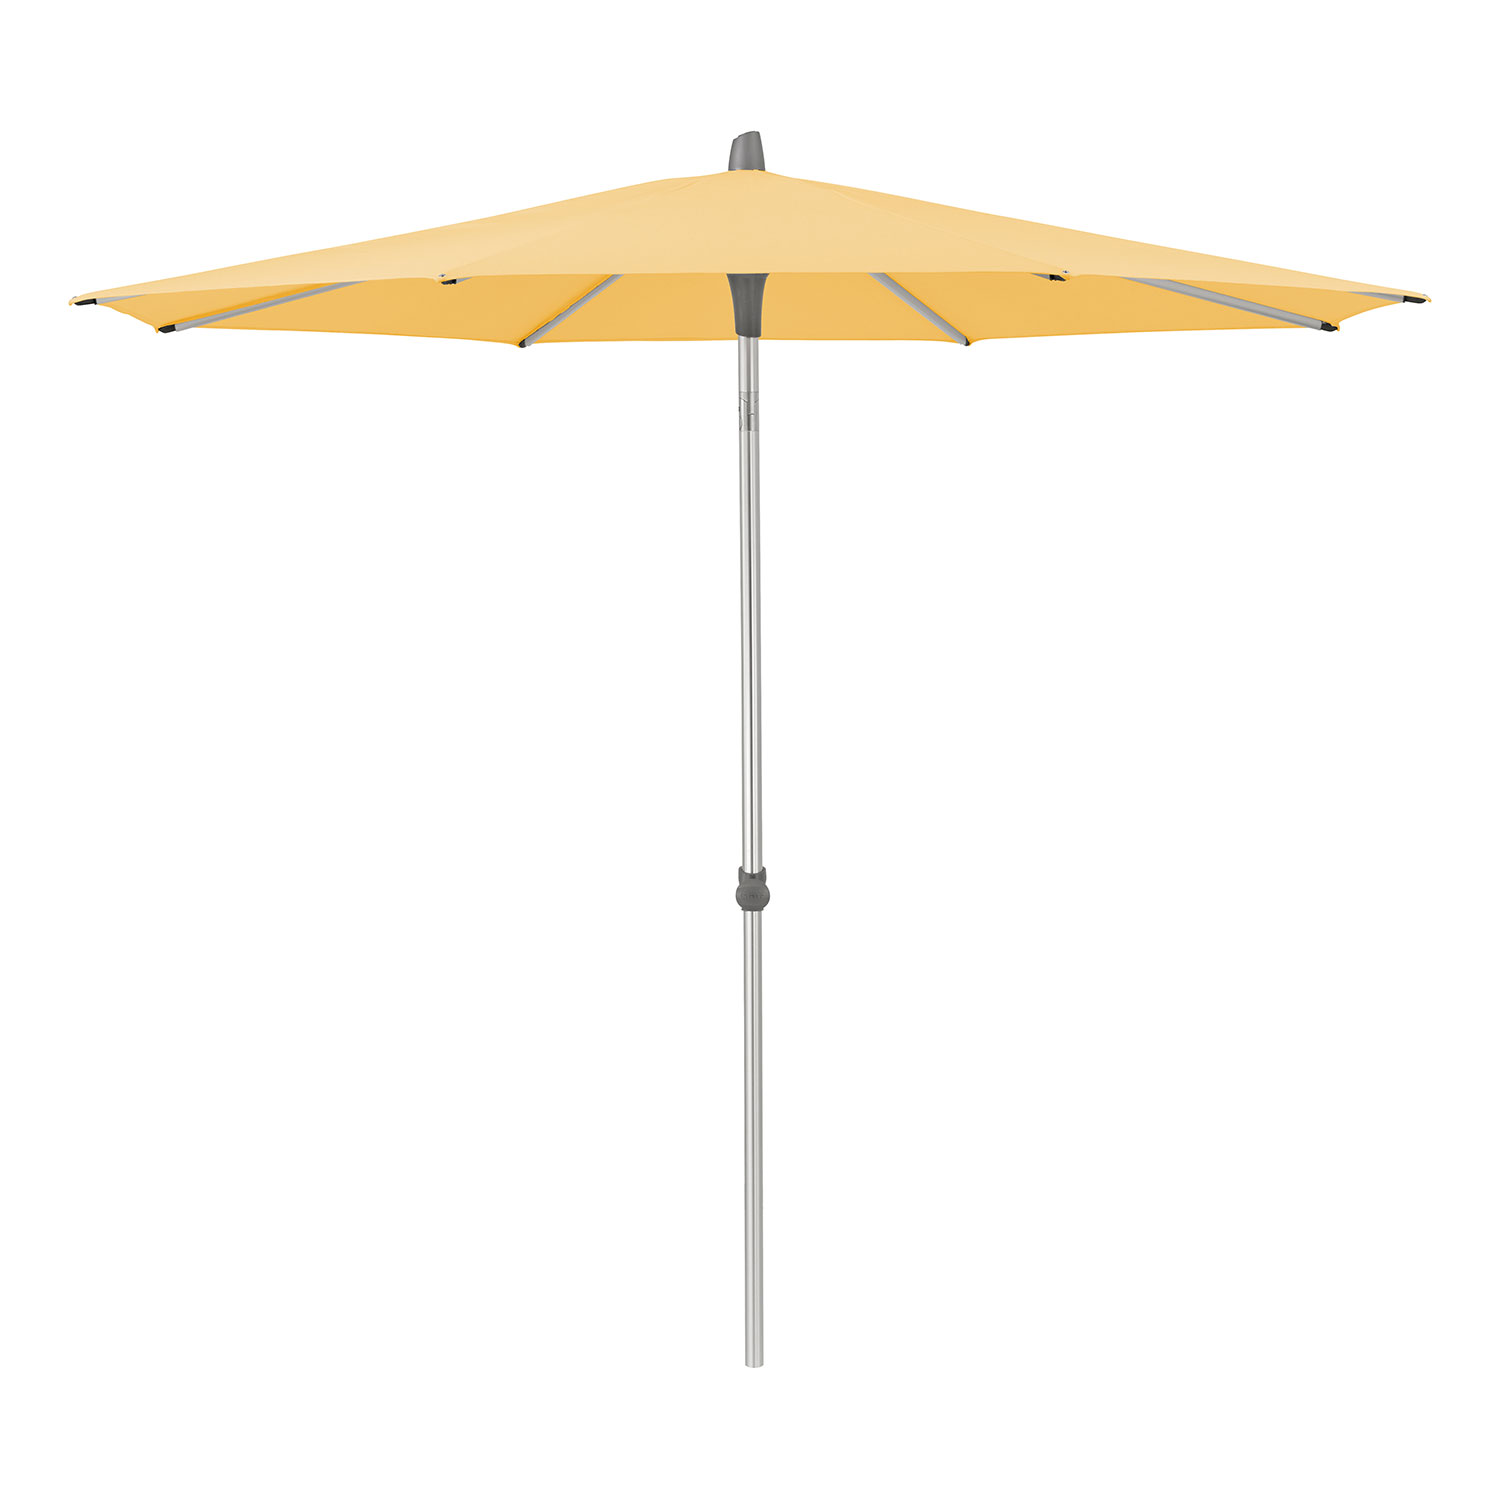 Glatz Alu-smart parasoll 250 cm kat.4 438 straw